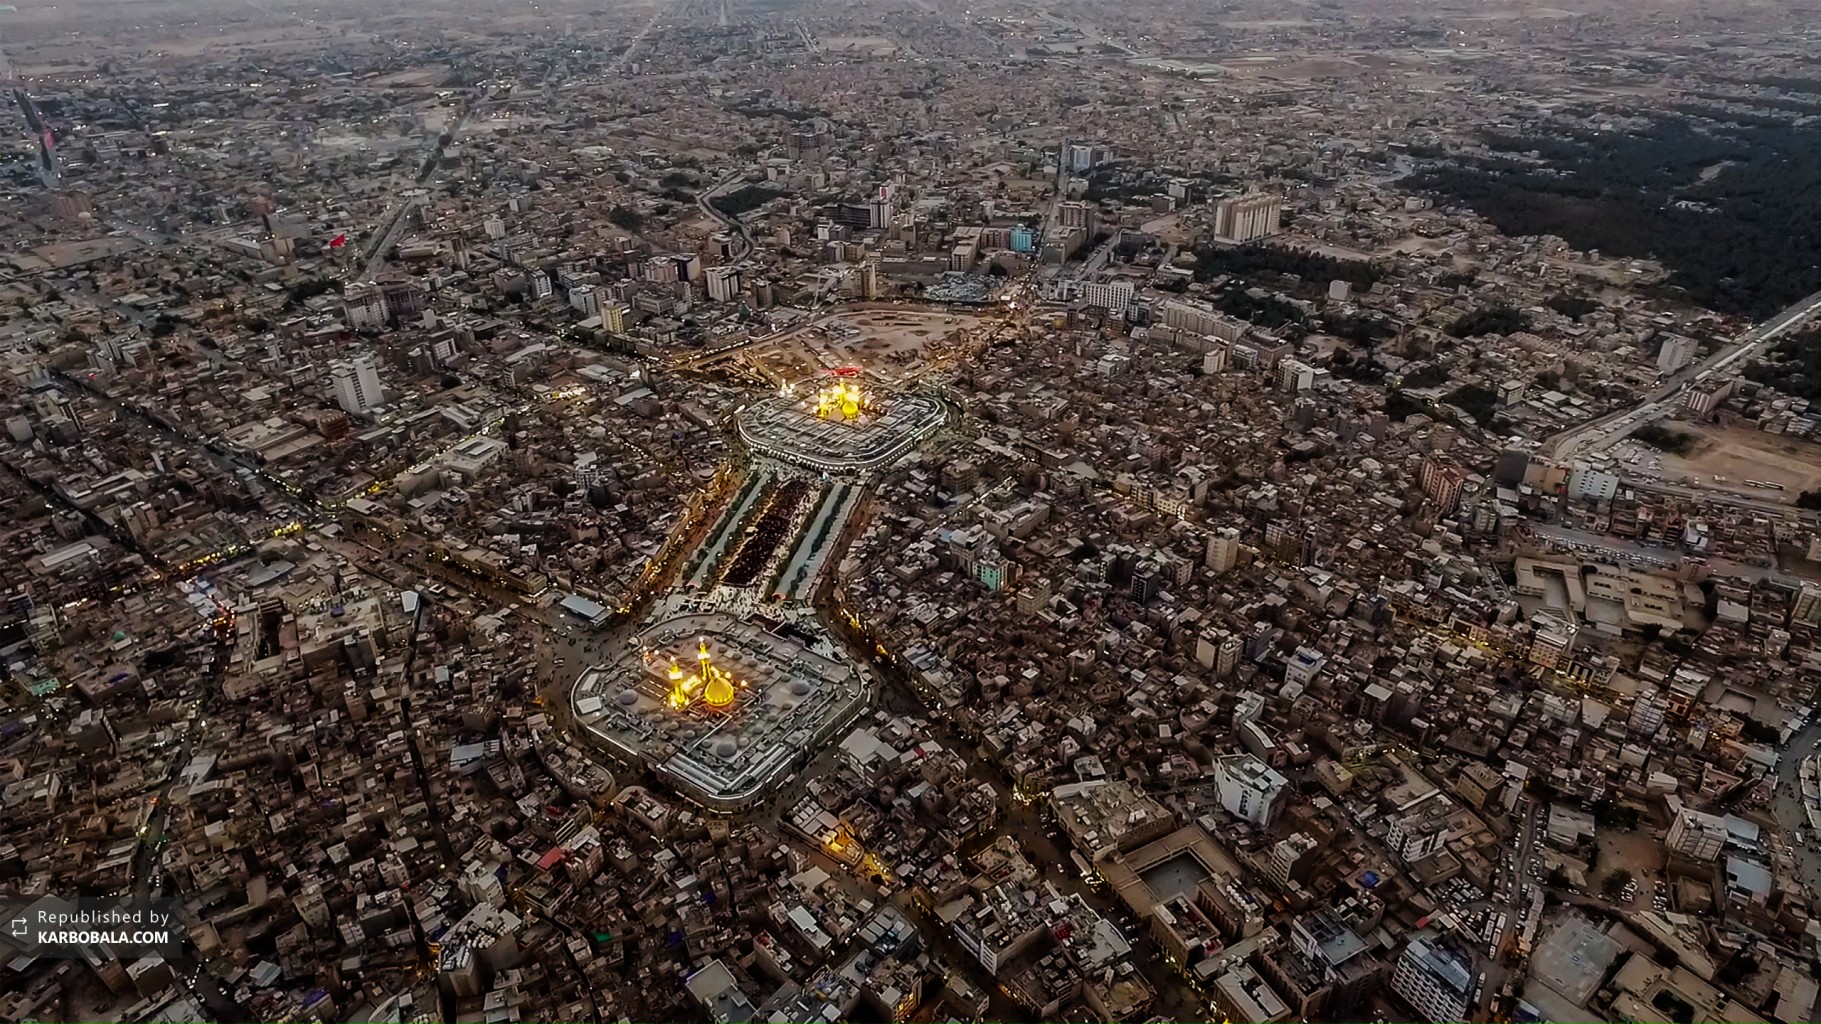 تصویر هوایی از حرمین شریفین در شهر کربلا